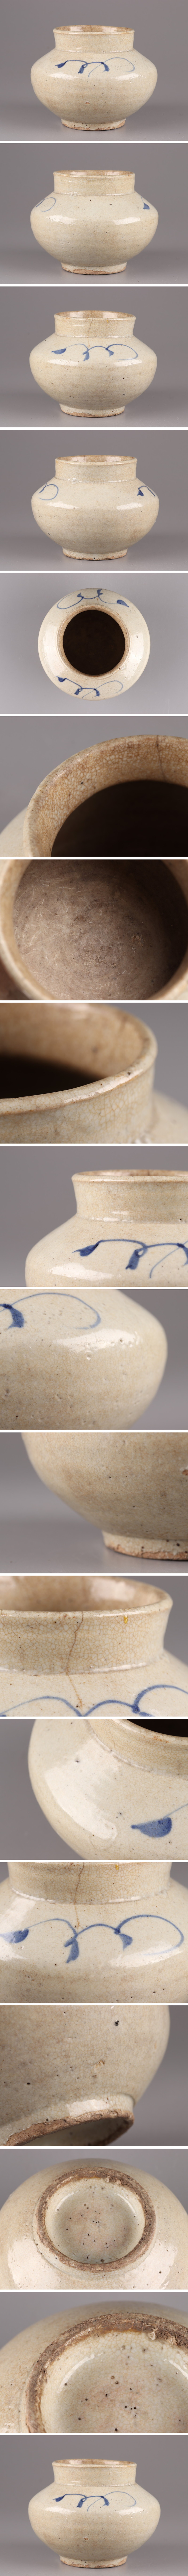 定番豊富な古美術 朝鮮古陶磁器 李朝 白磁 染付 壷 時代物 極上品 初だし品 3998 李朝